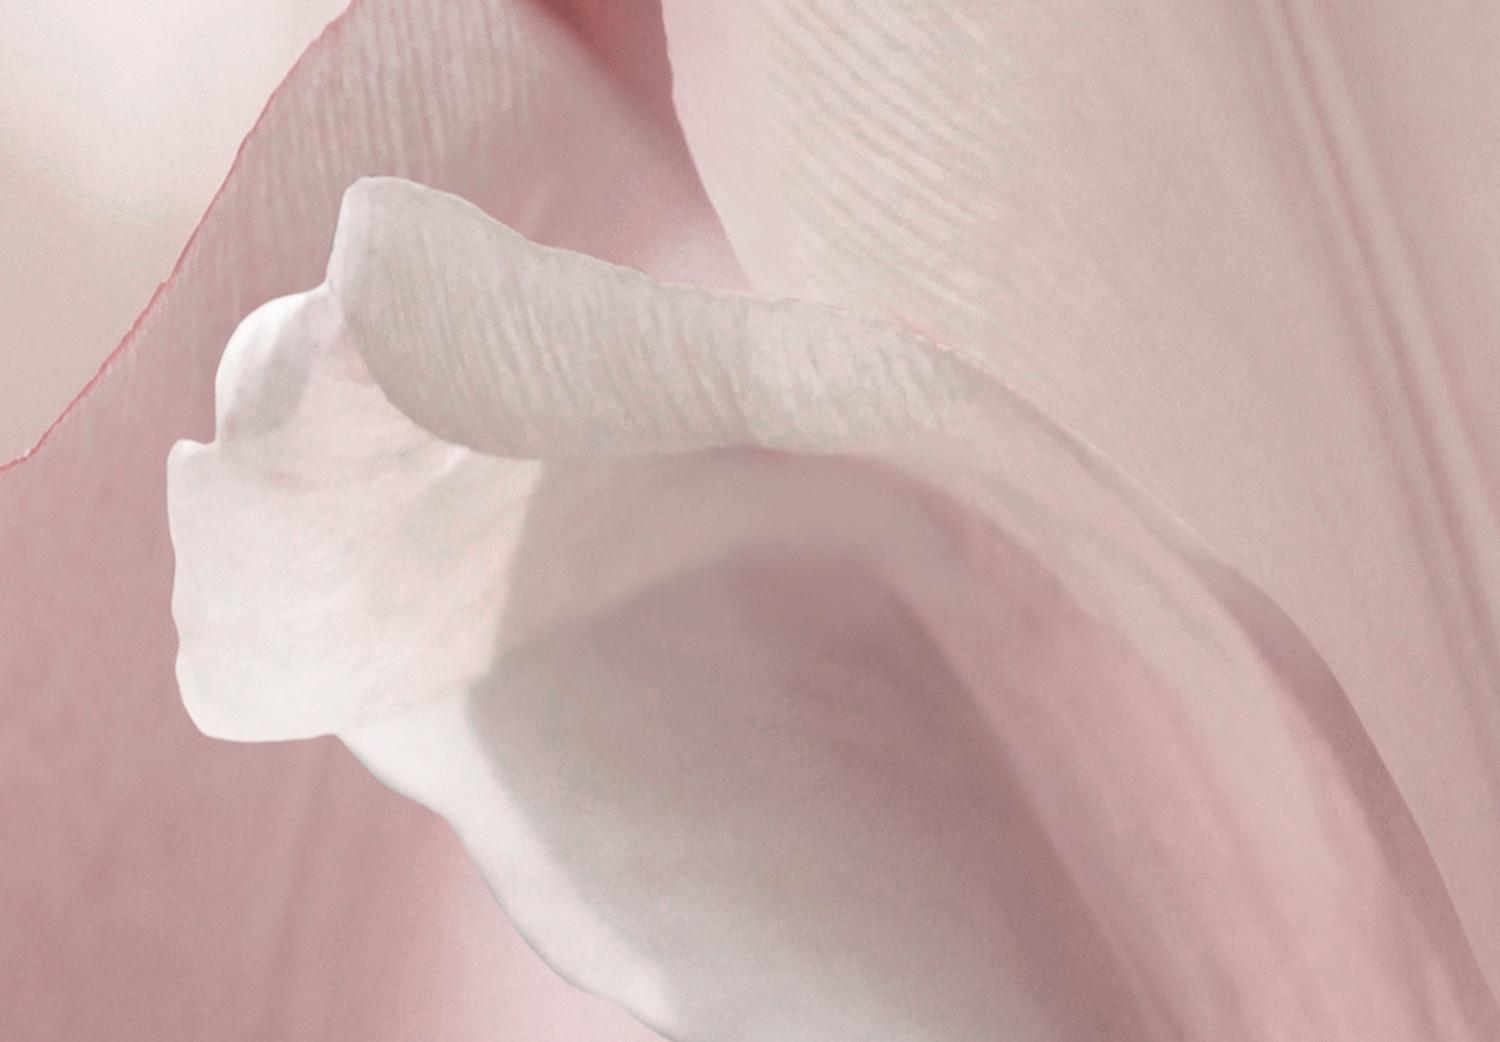 Cuadro decorativo Pétalos de primavera (1 pieza) - tulipán rosa en tonos pastel